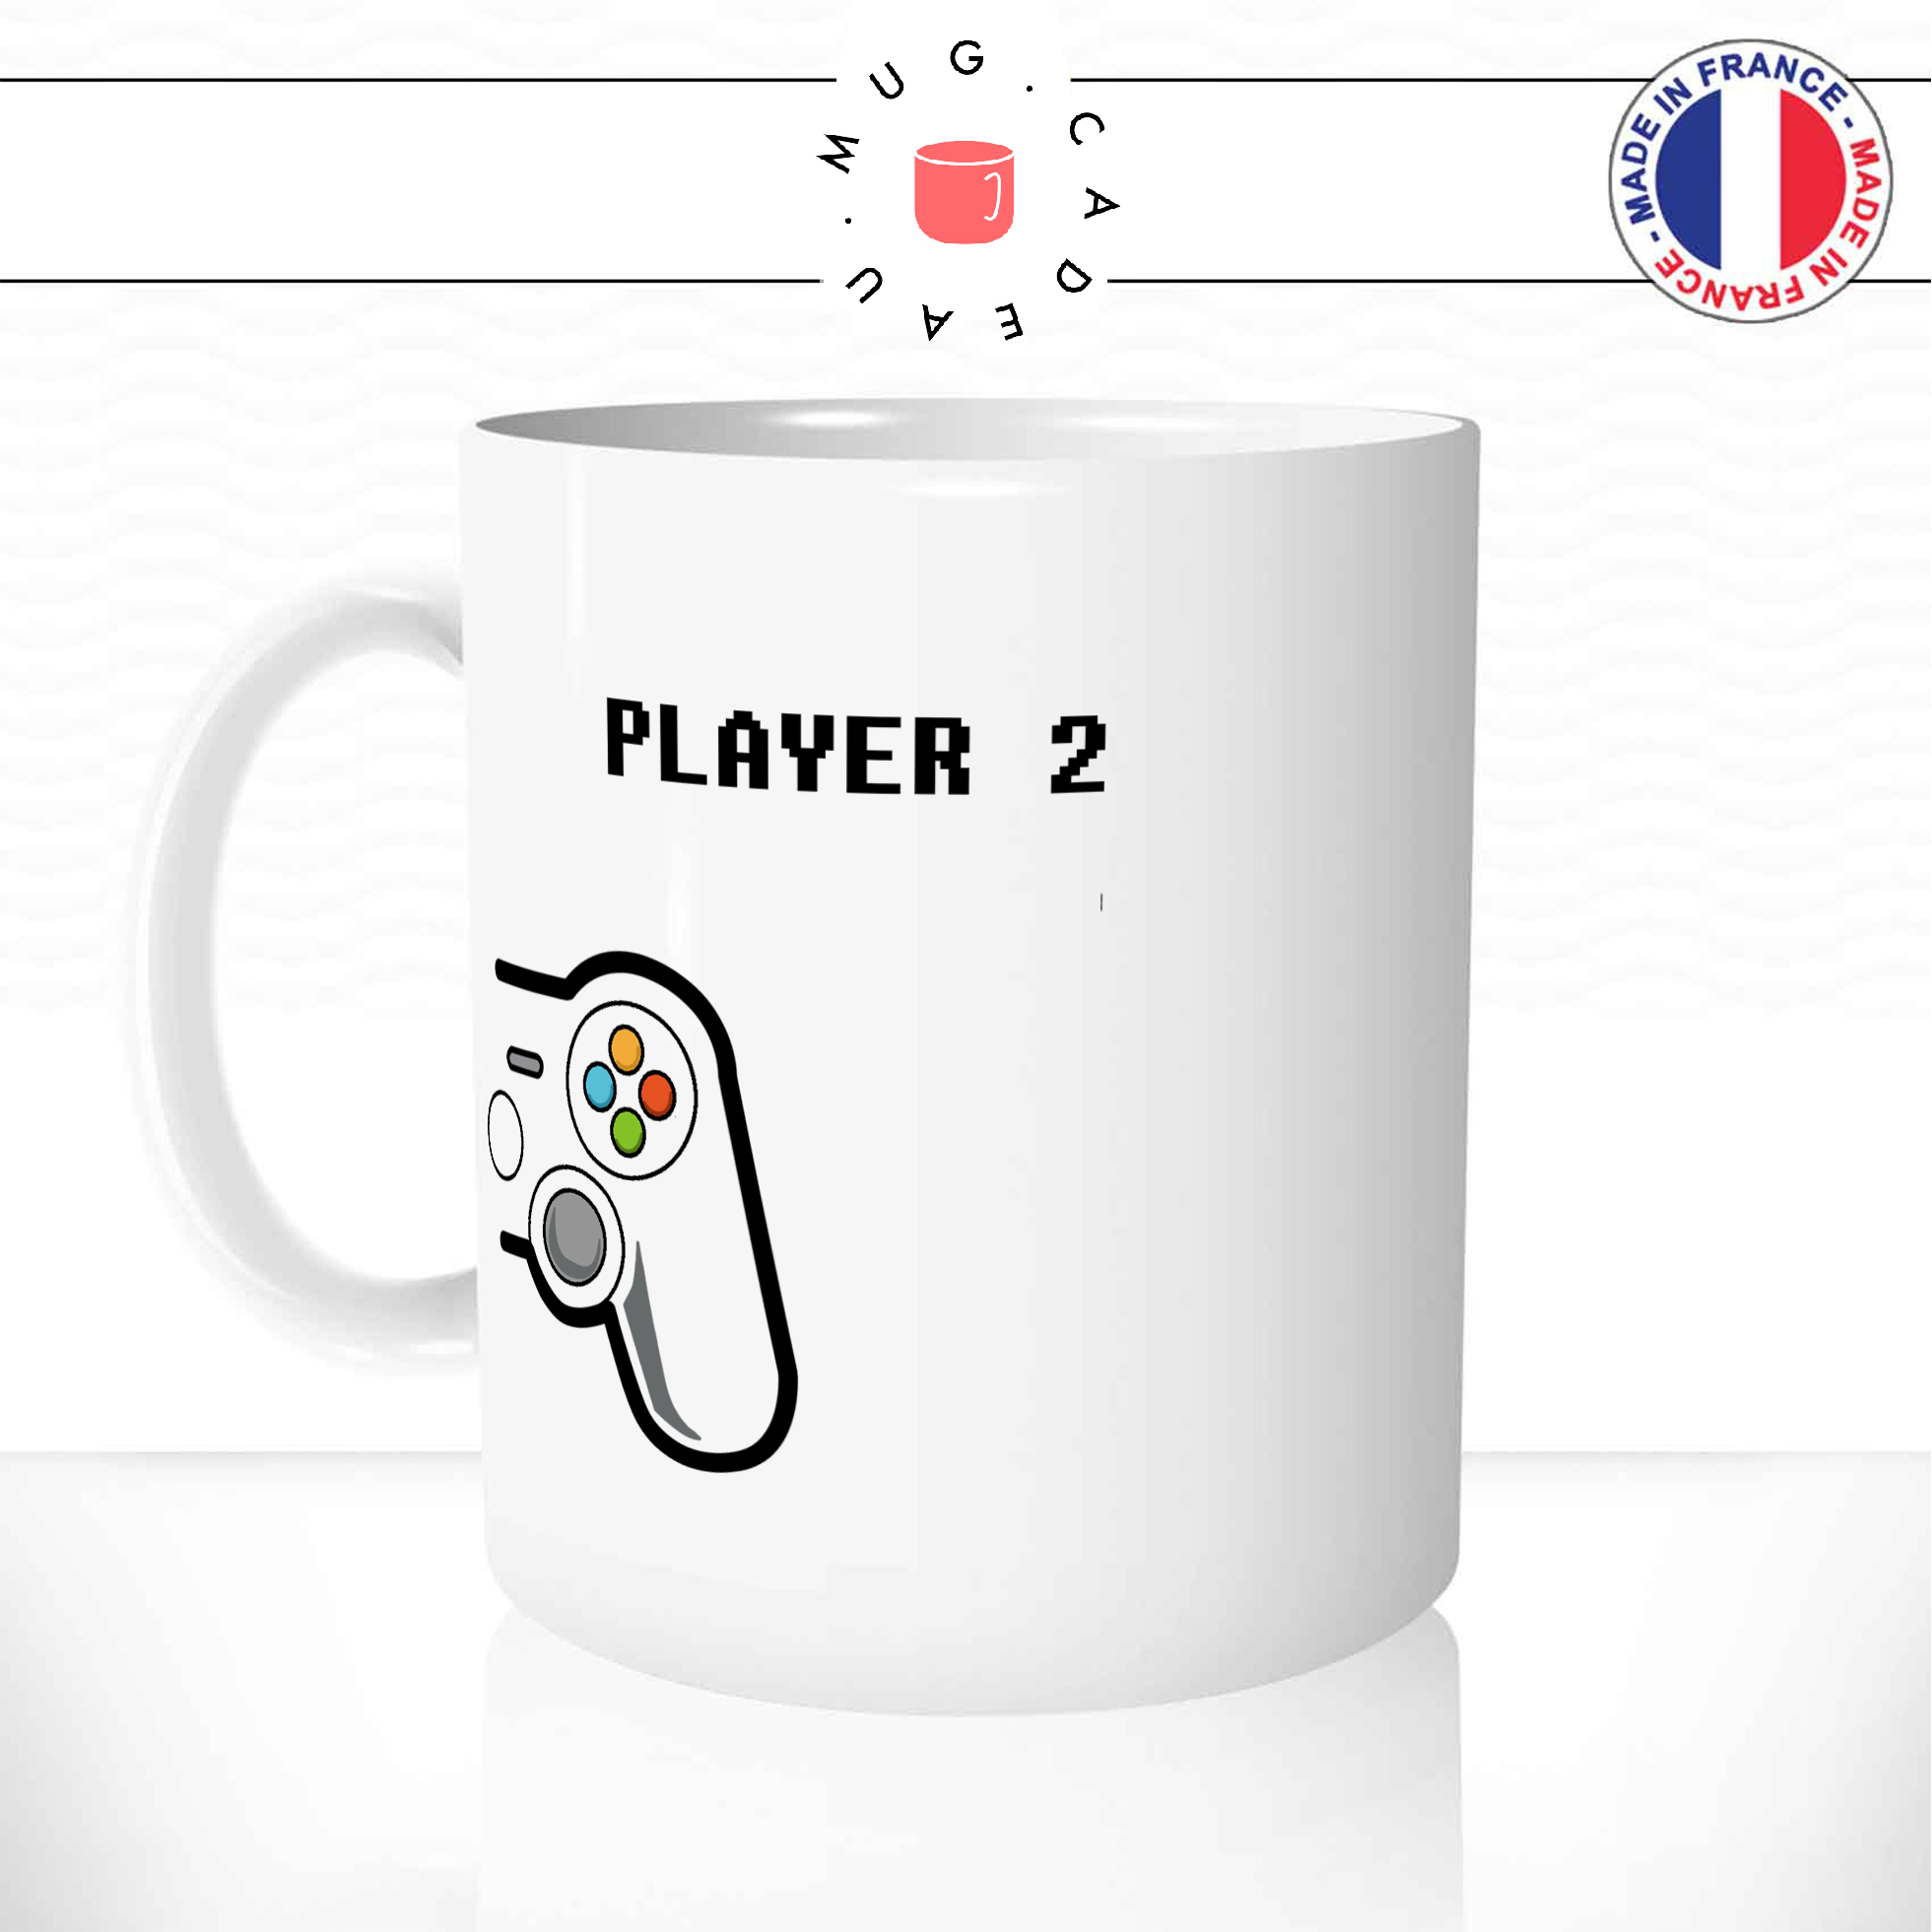 Mug Player 1 Player 2